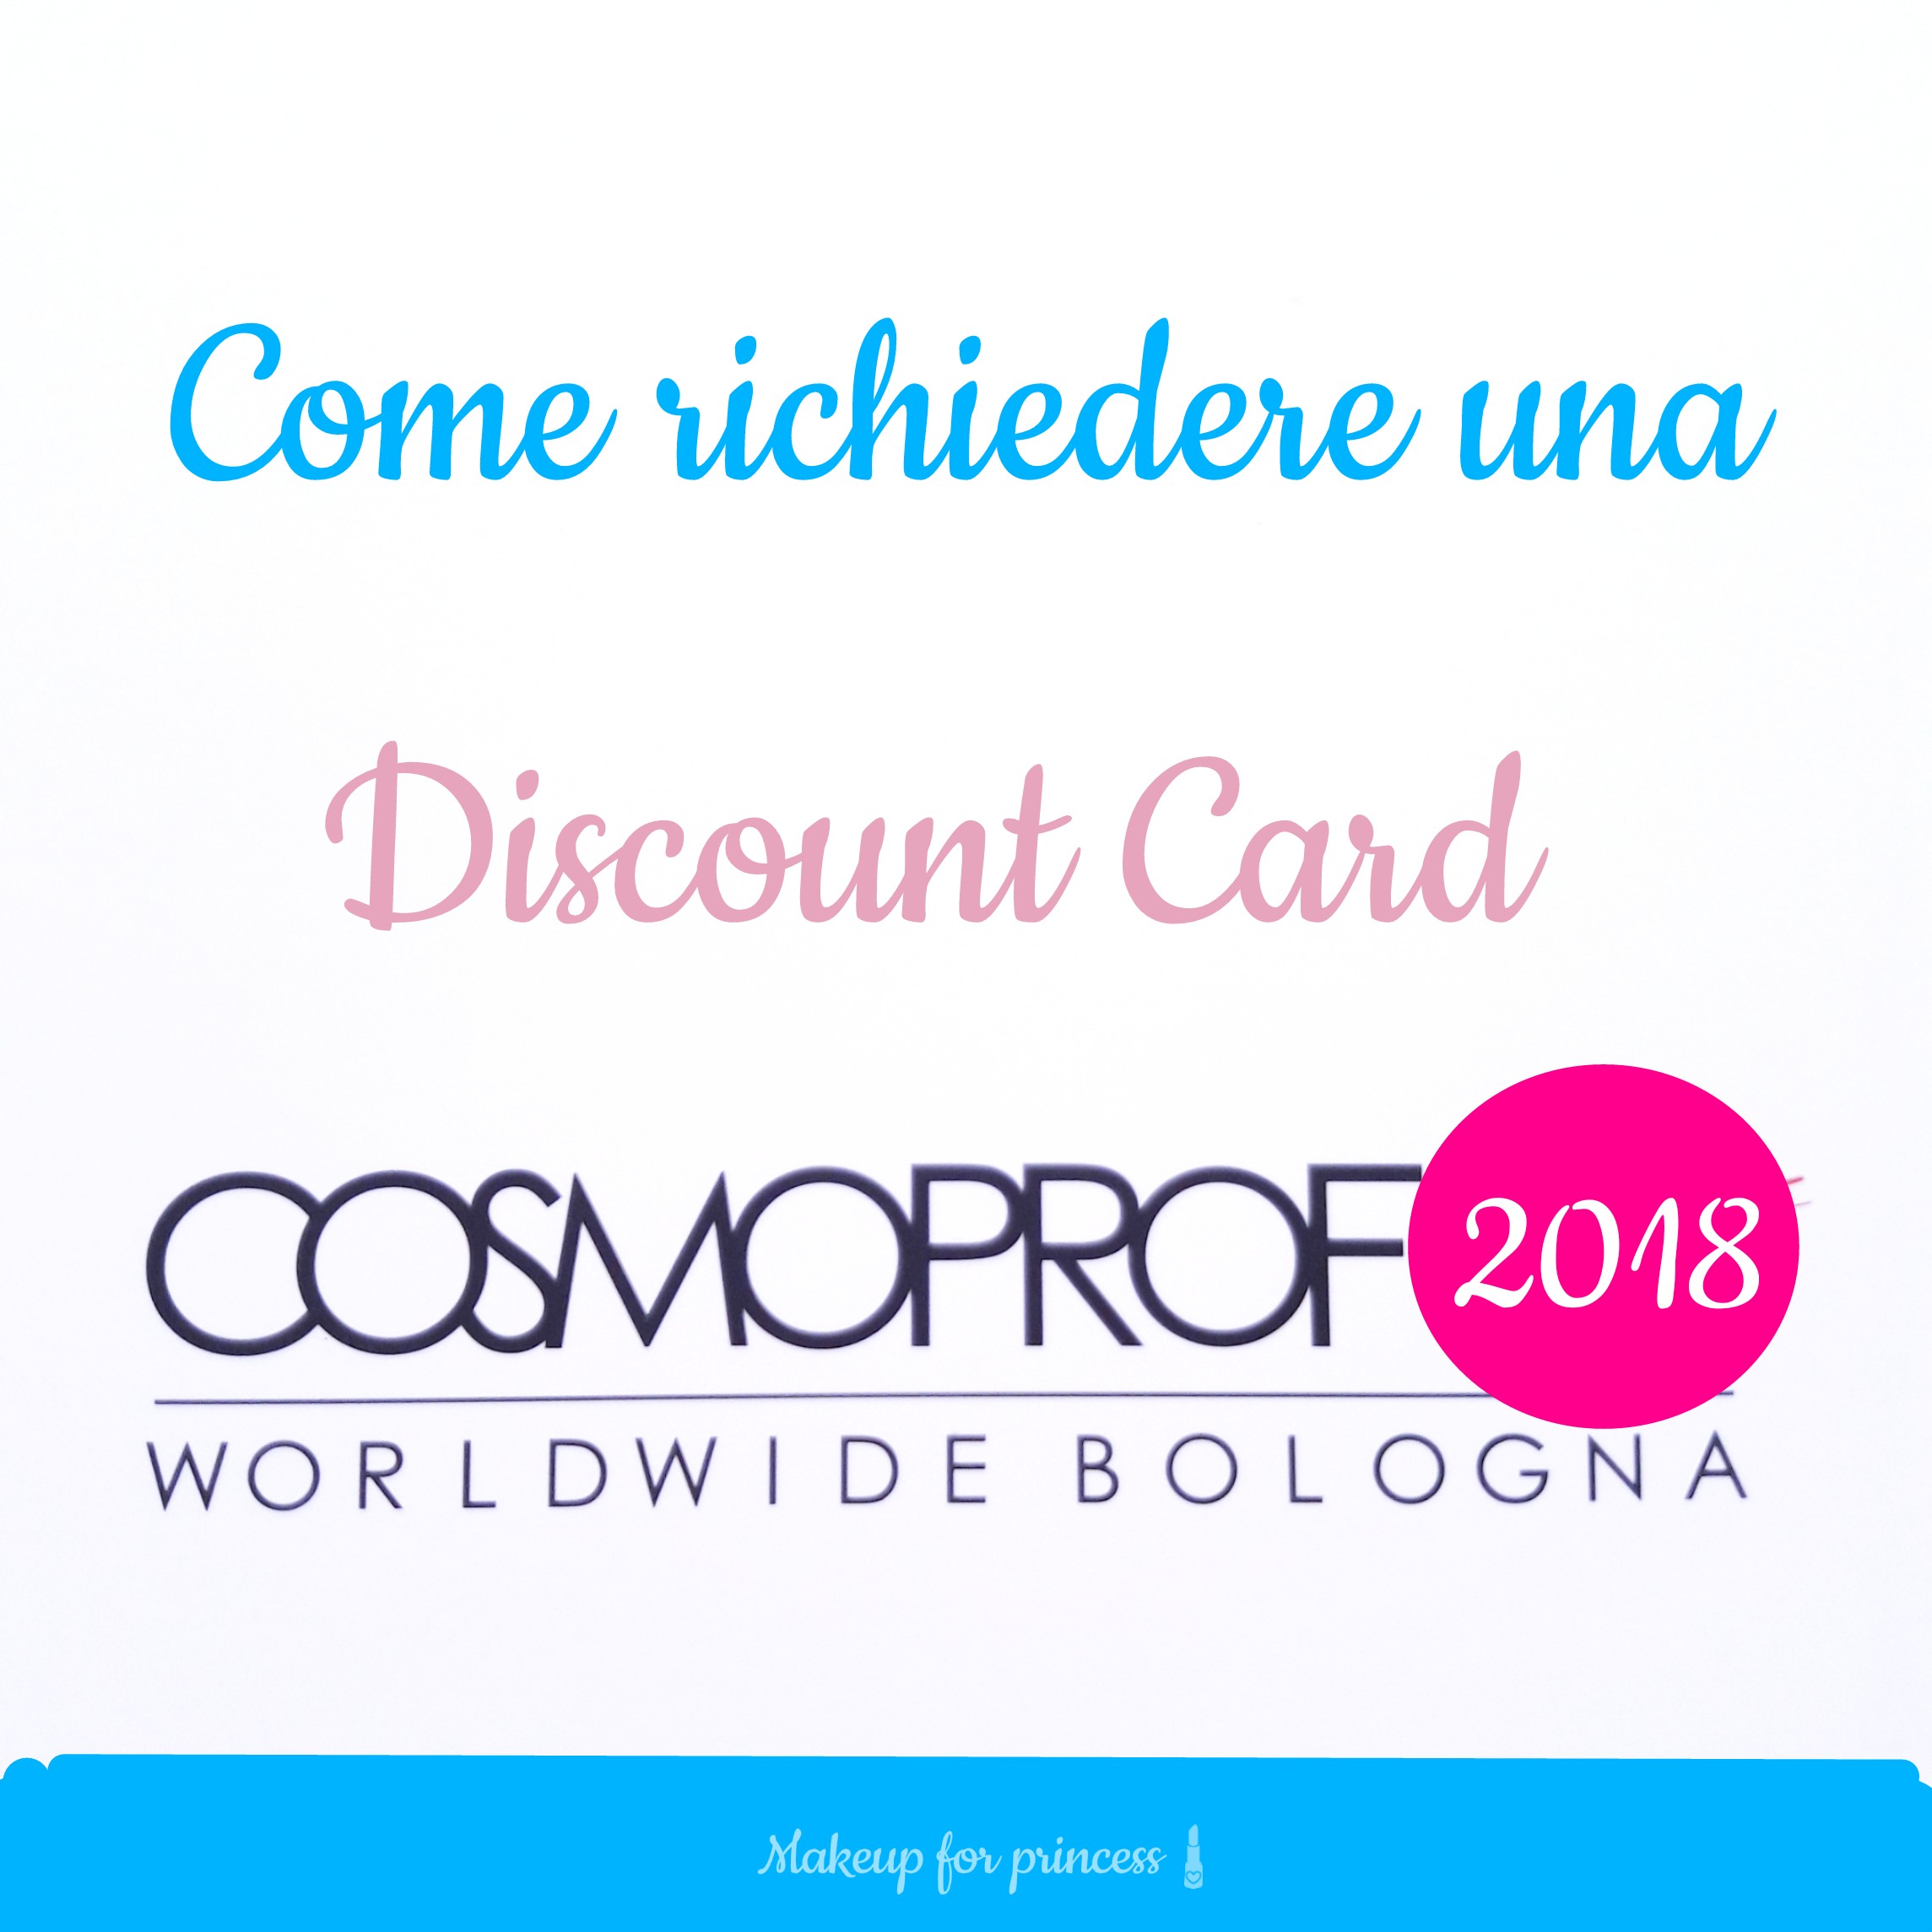 Discount Card Cosmoprof 2019 e 2020, come richiedere lo sconto per il